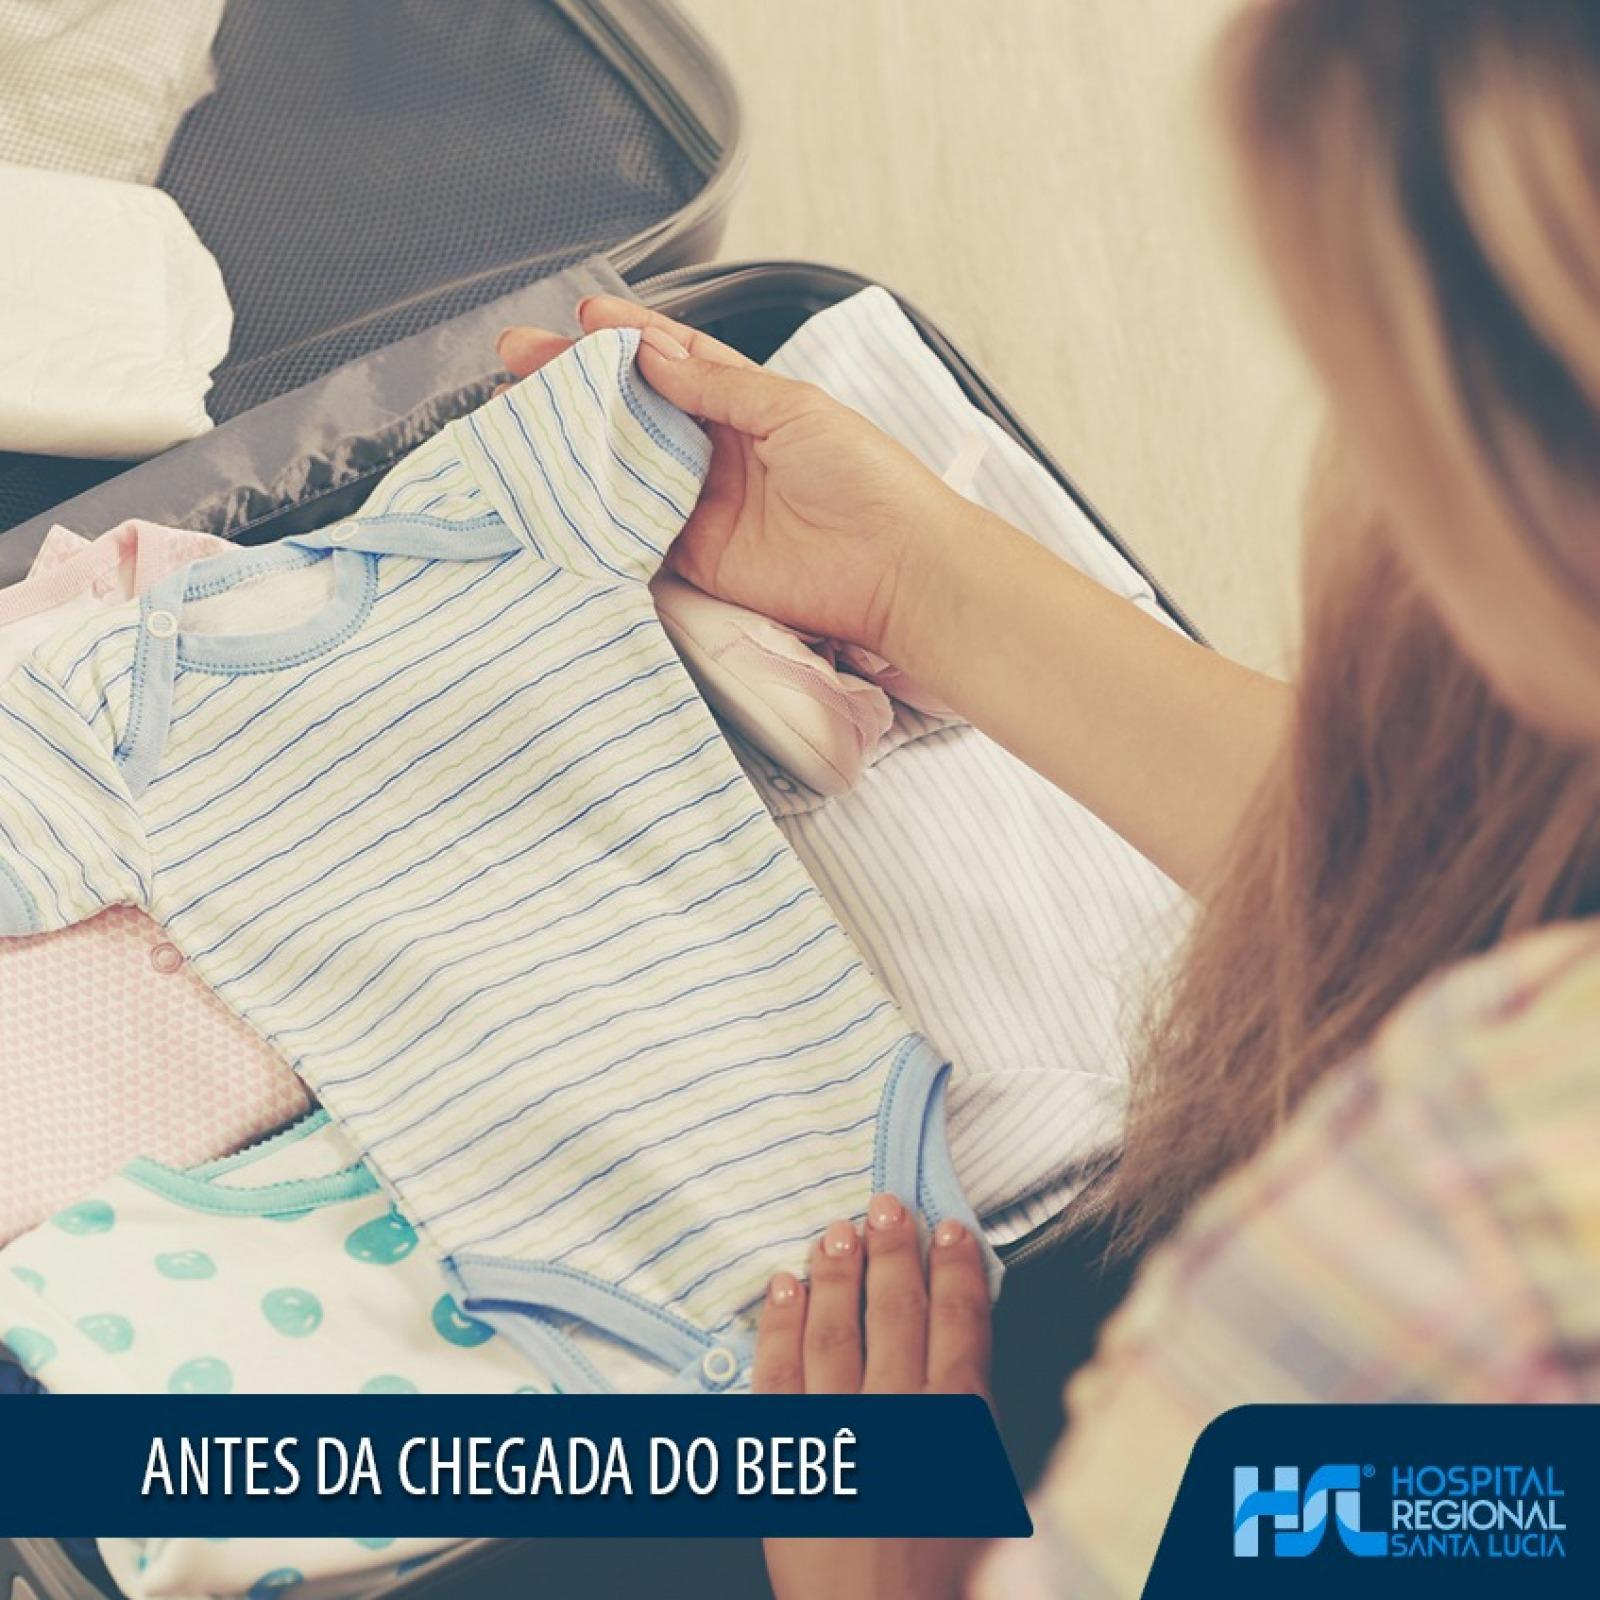 Antes do parto, é importante que você se prepare: